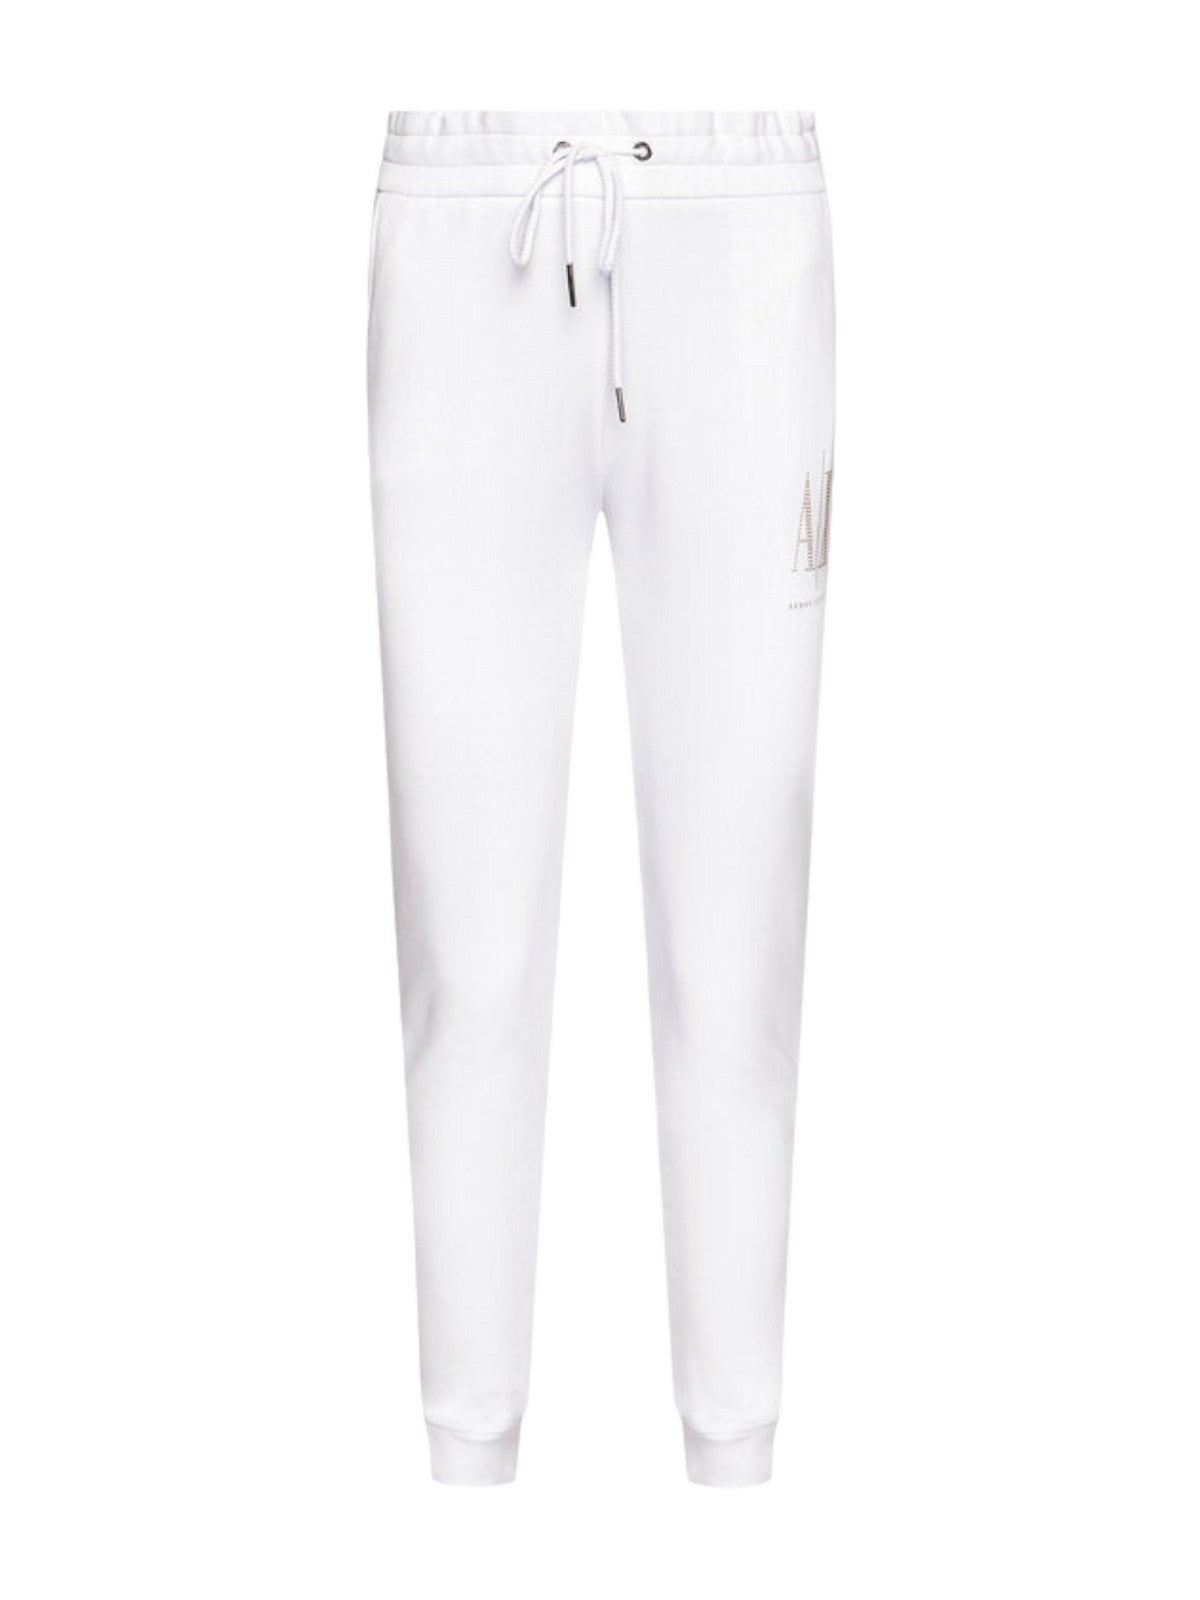 ARMANI EXCHANGE Pantalon femme 8NYPDX YJ68Z 1000 Blanc